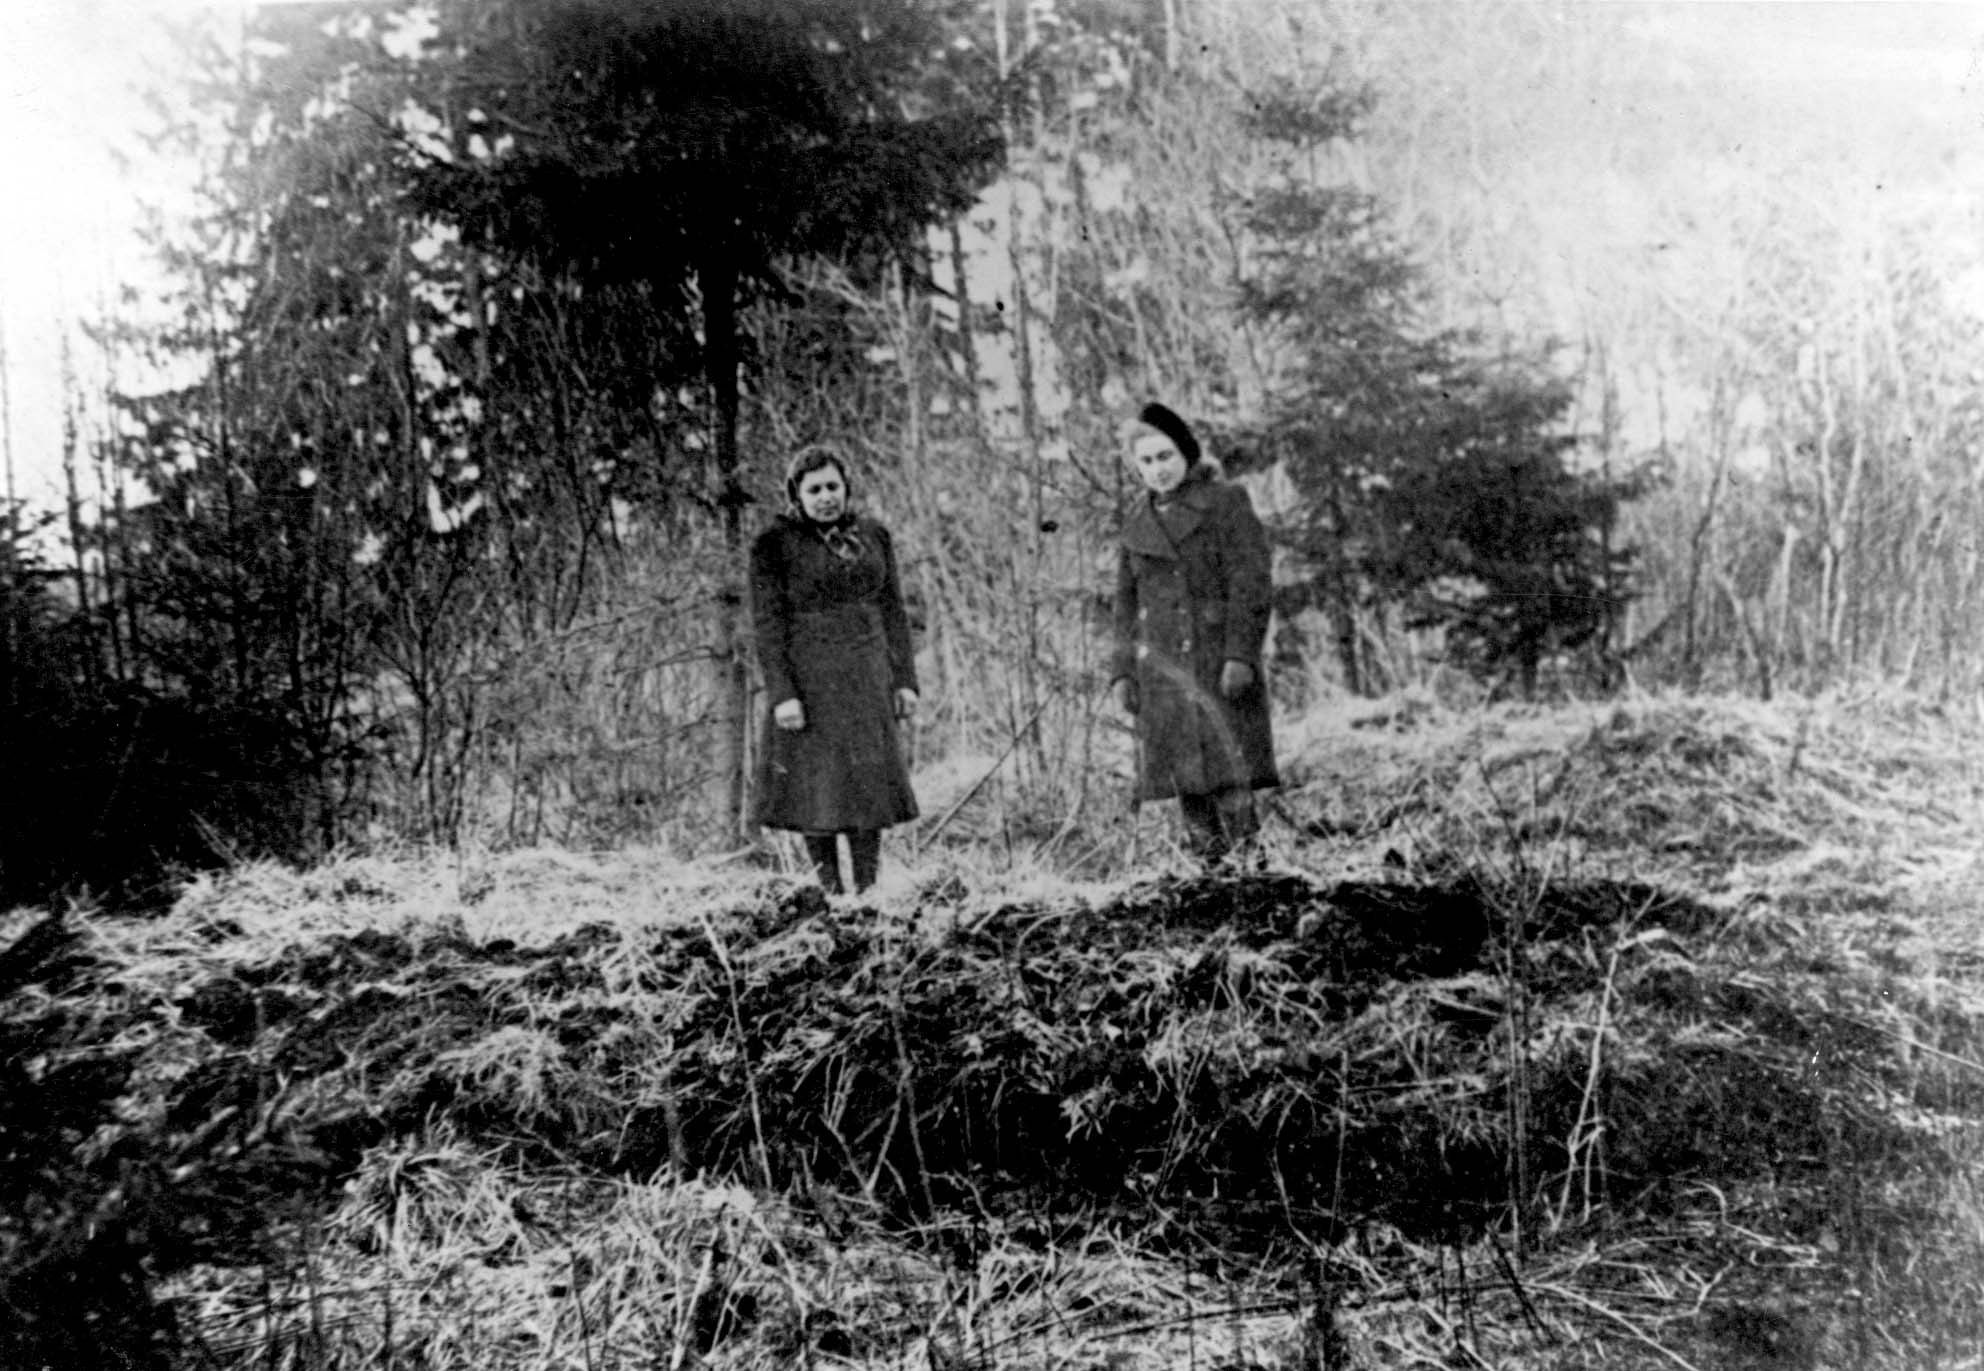 Geruliai. Two women at the site of a mass grave, postwar